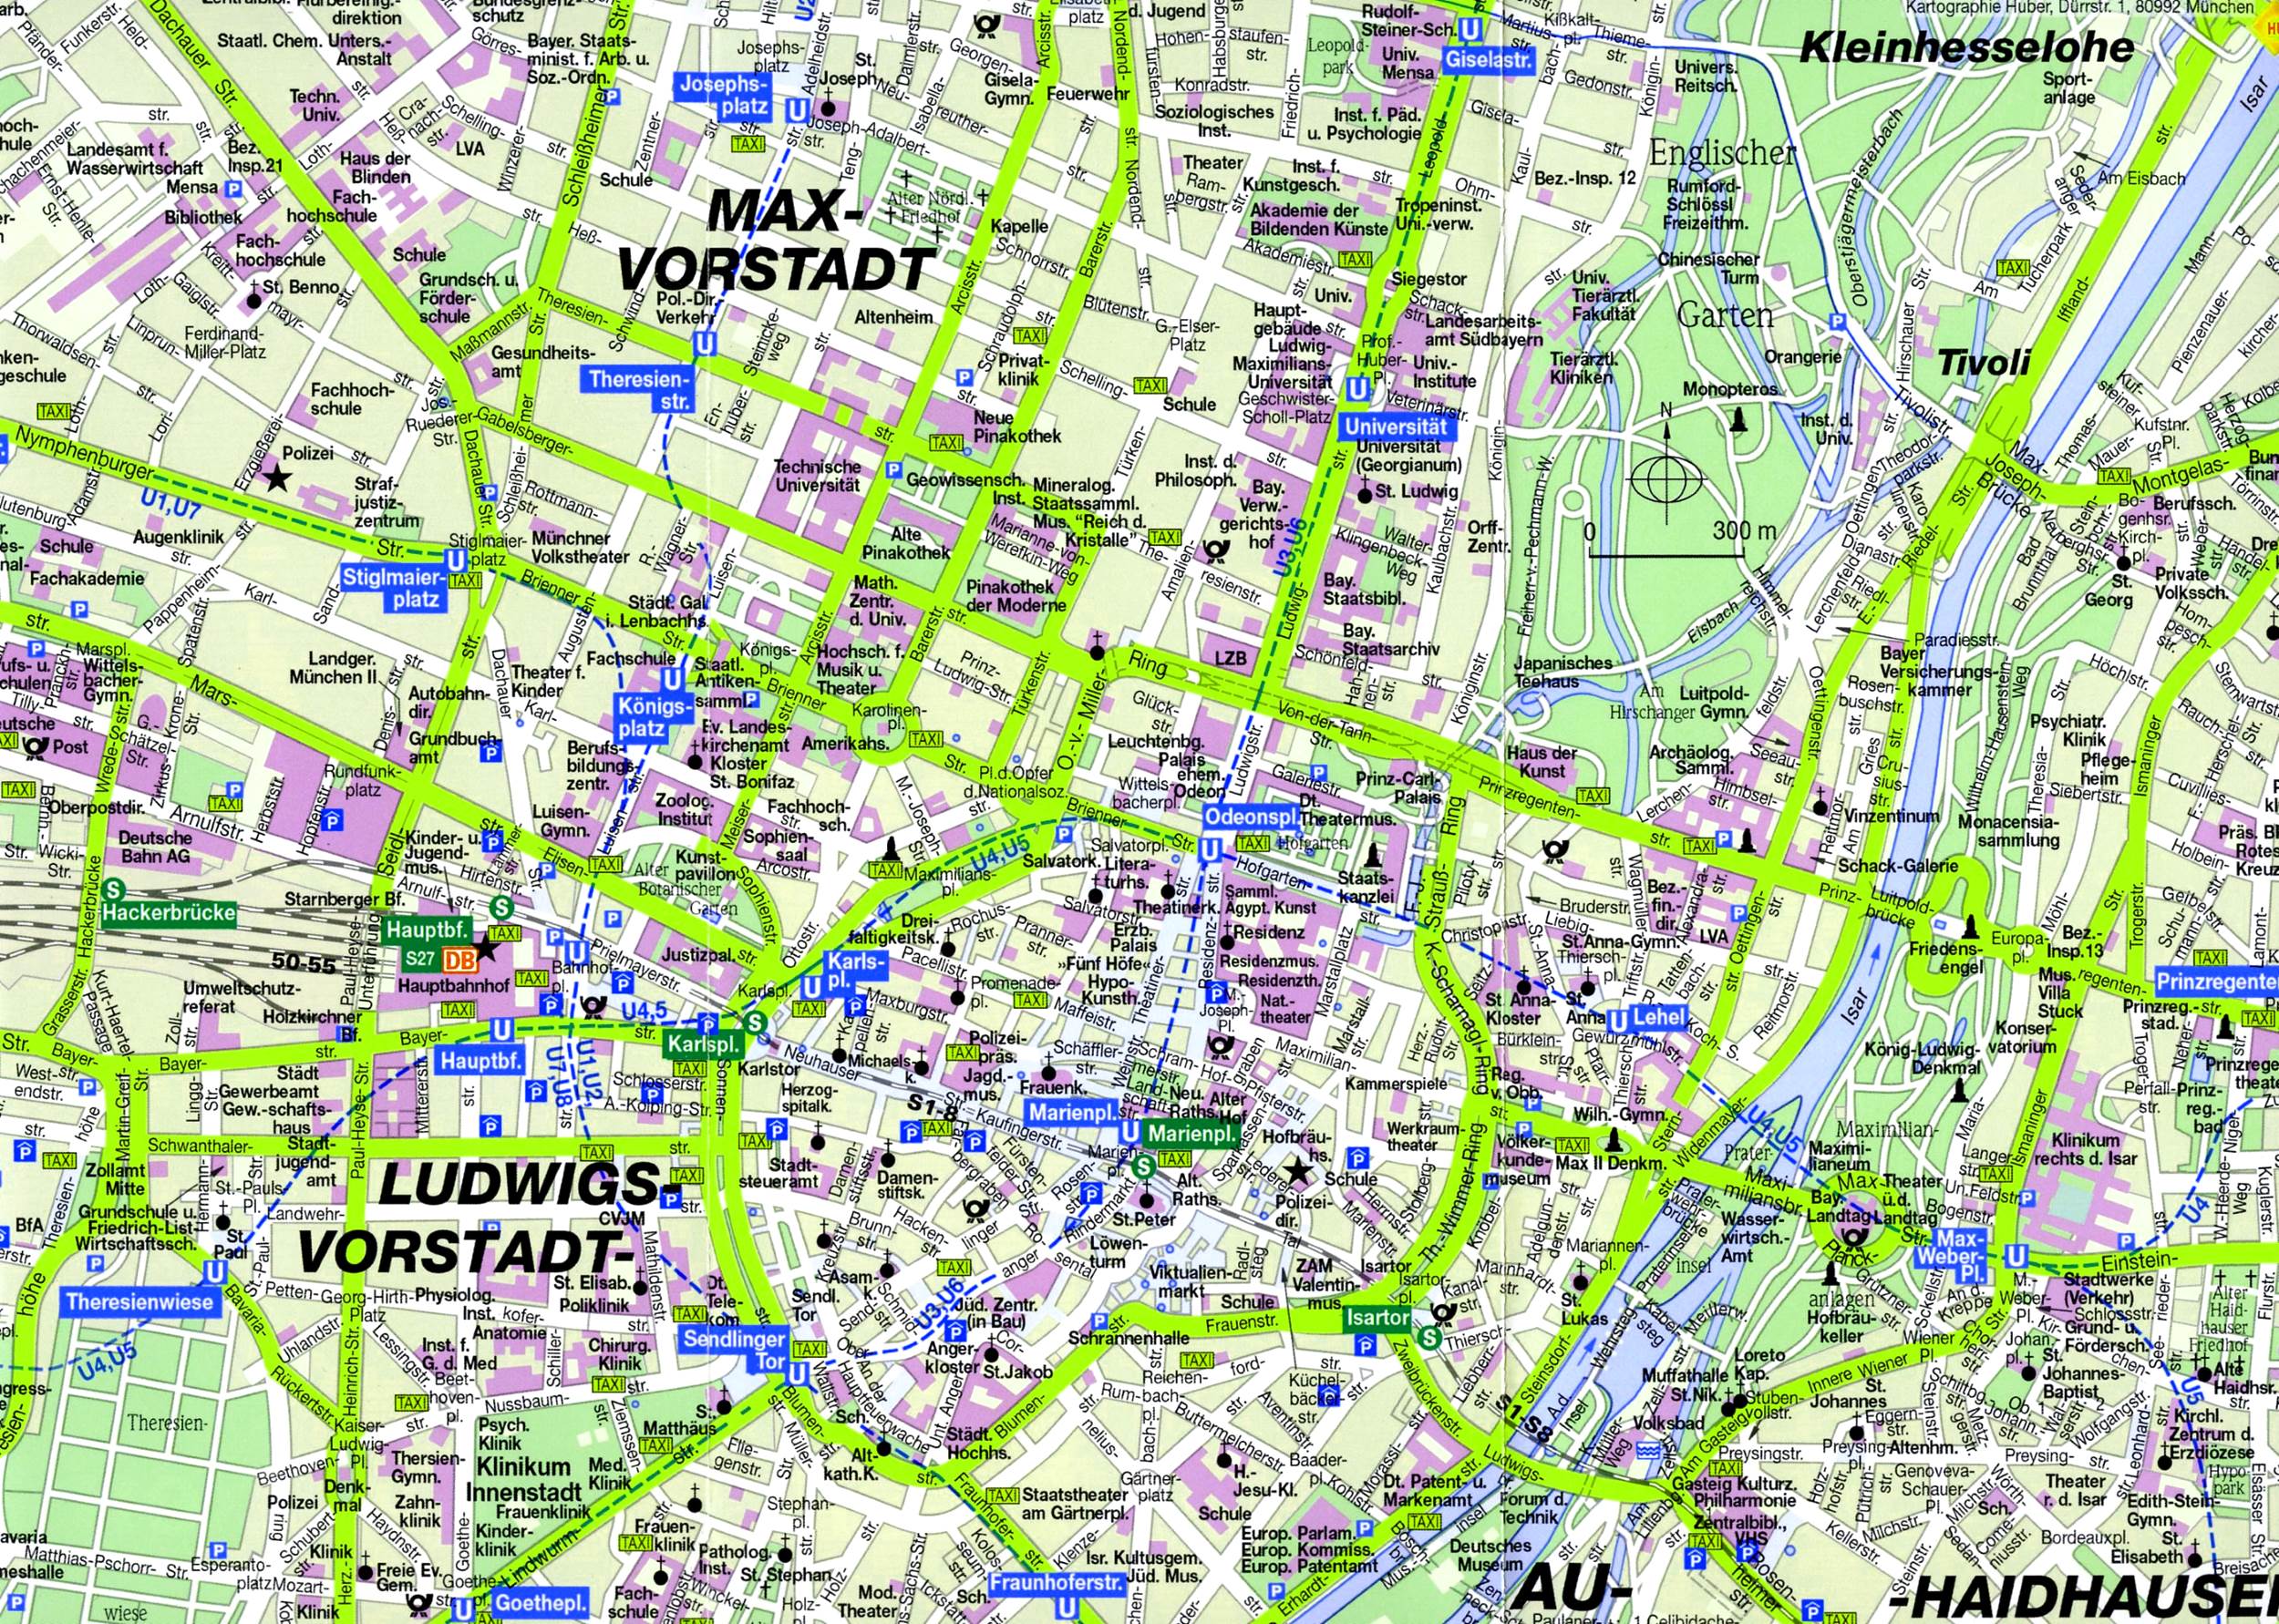 Мюнхен с достопримечательностями на карте